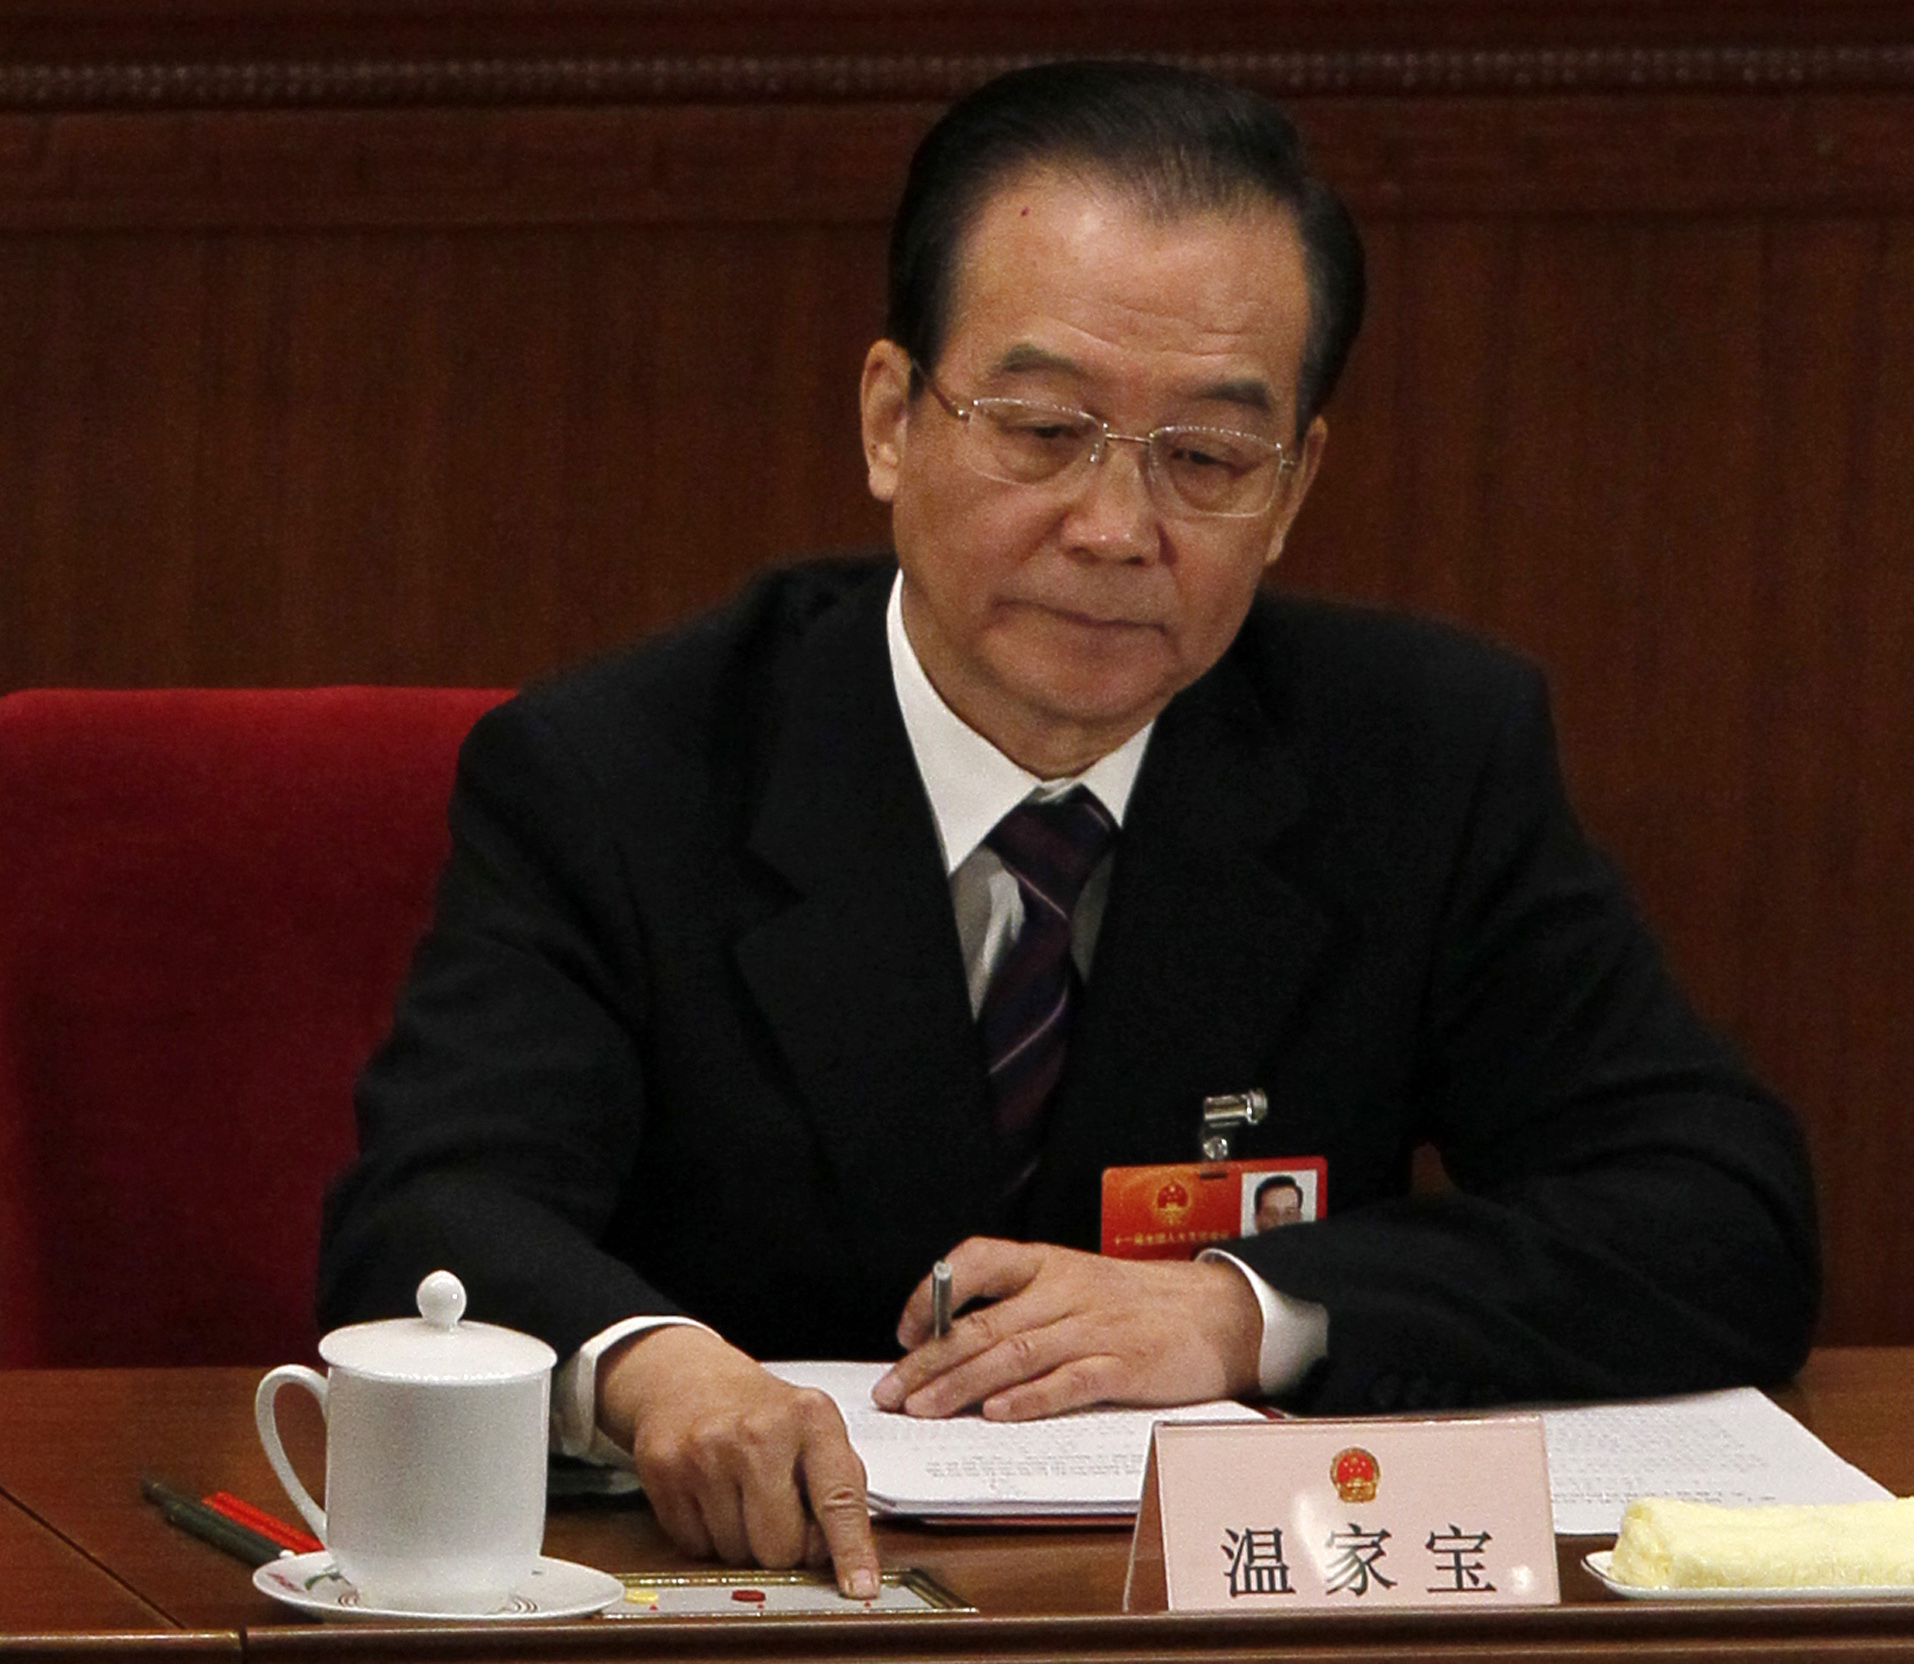 Den 23 april ska Lööf ta emot Kinas premiärminister Wen Jiabao.